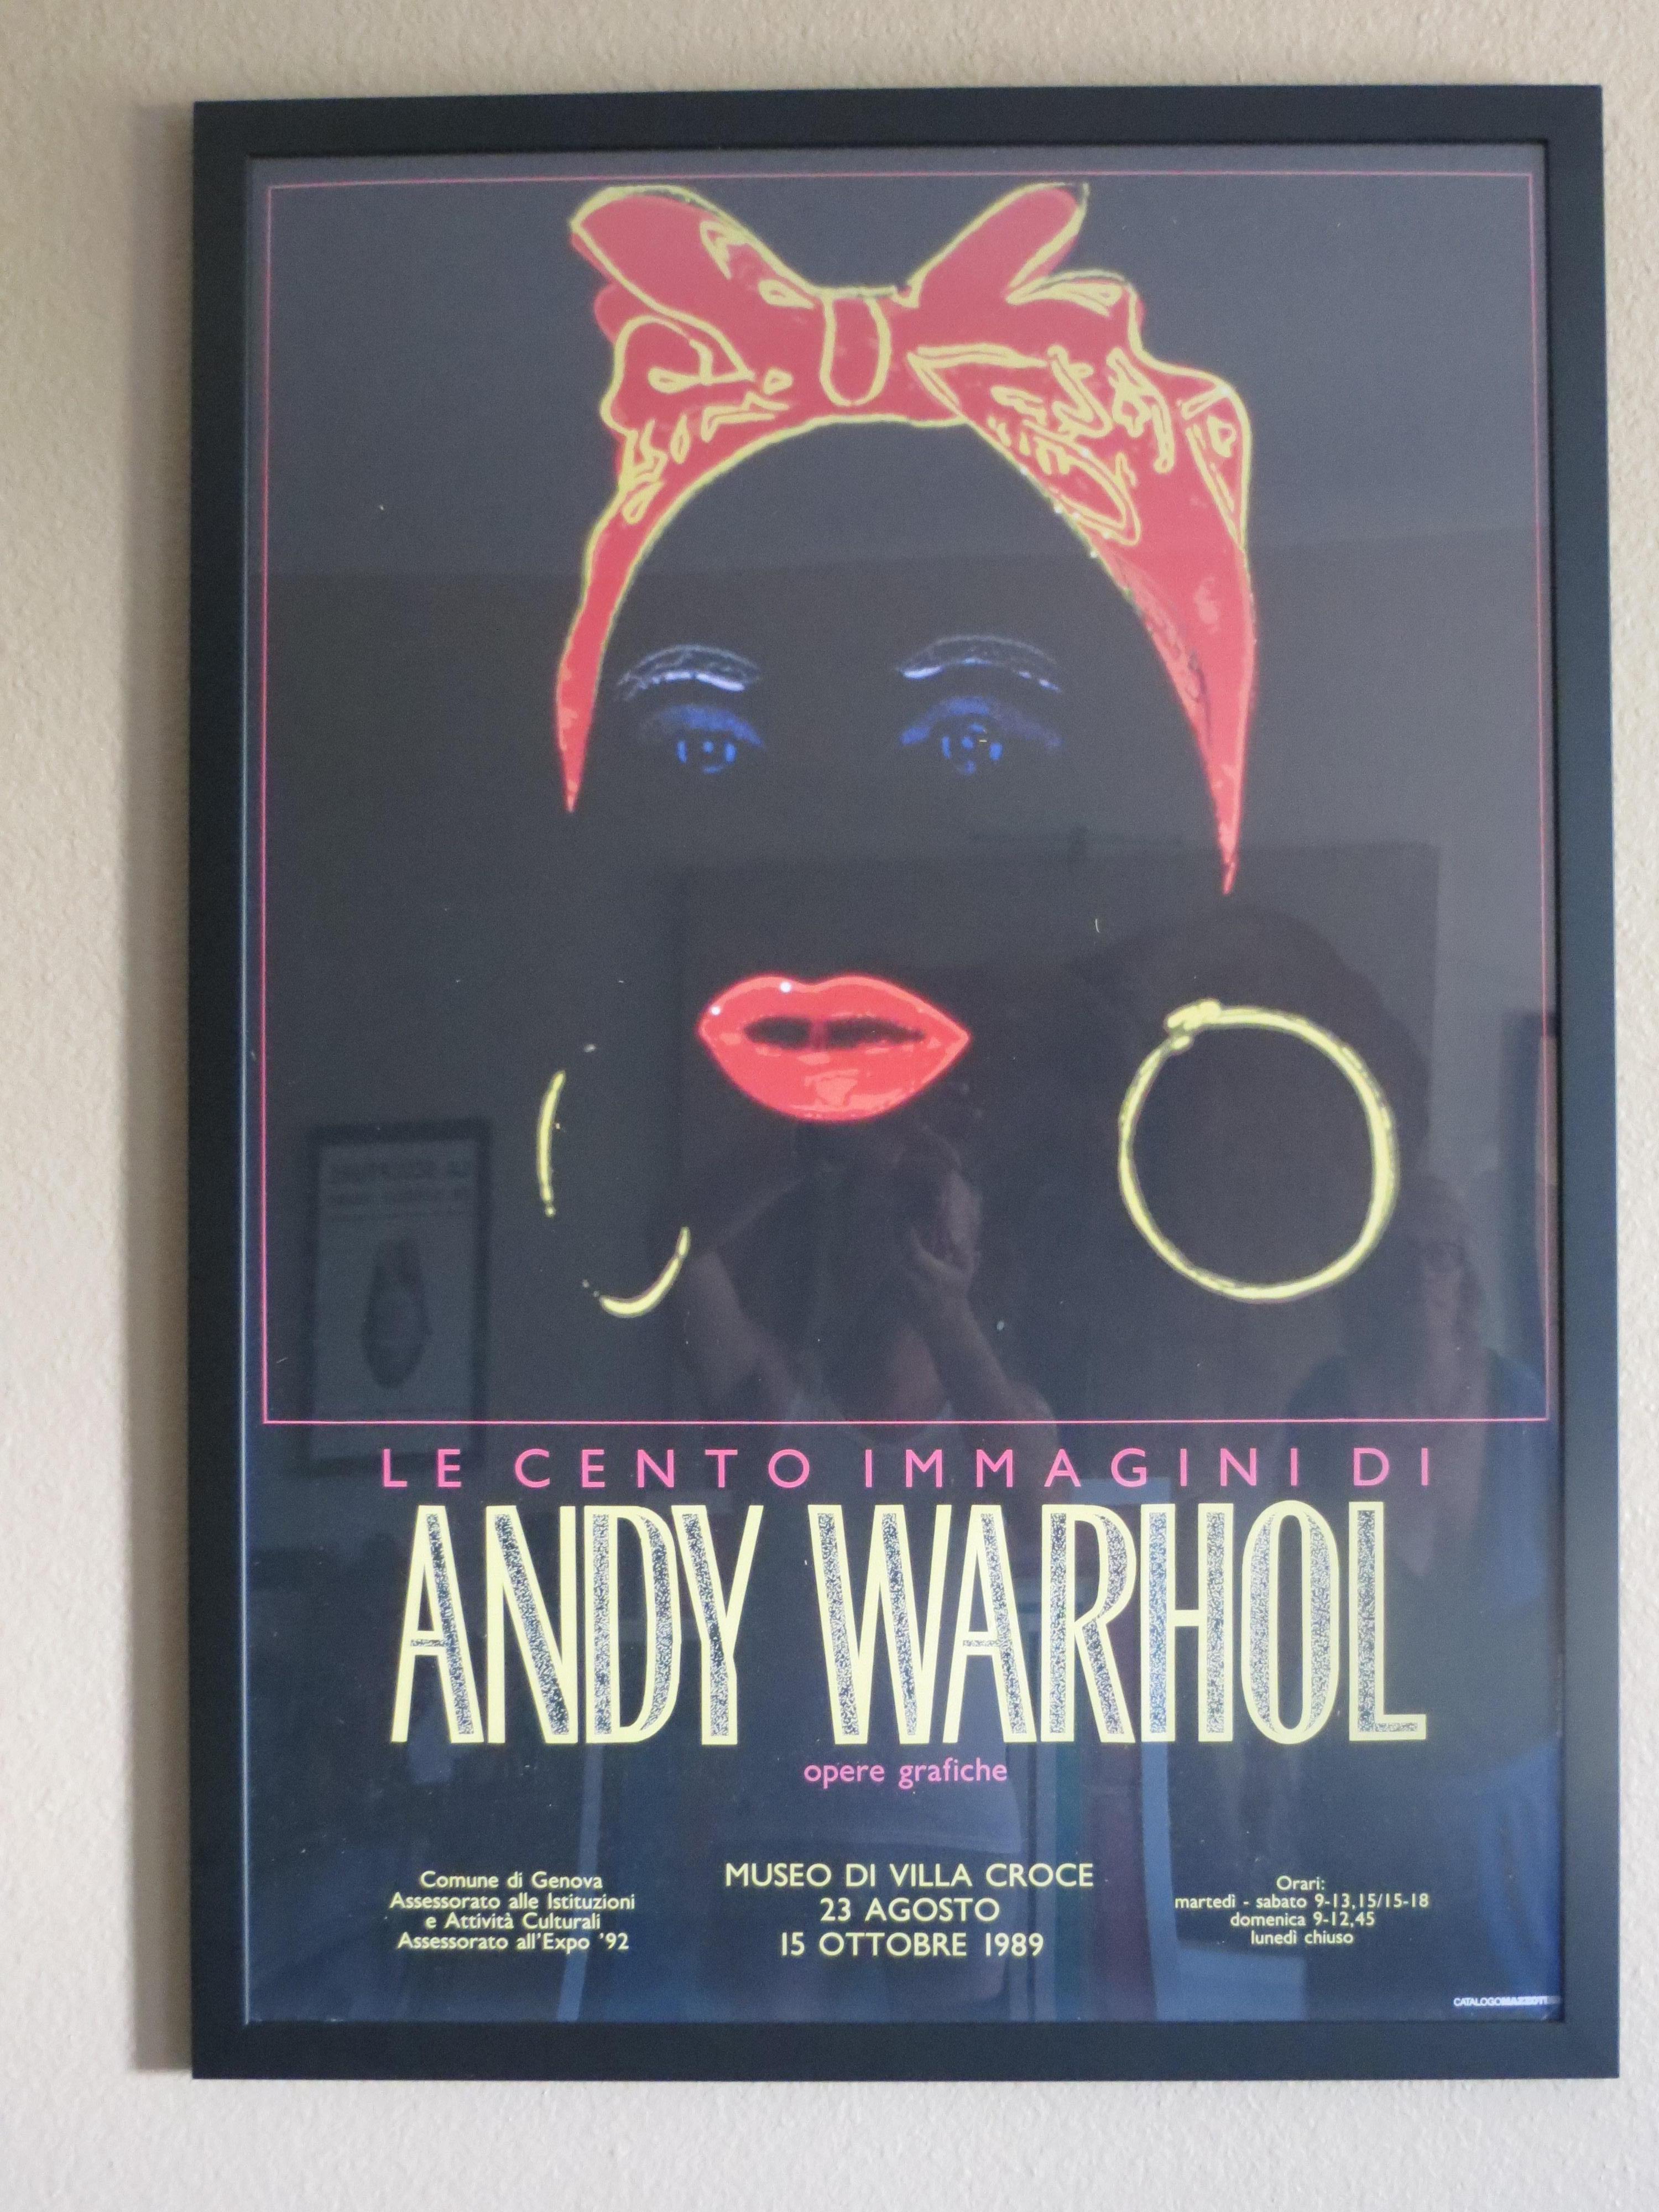 Affiche d'exposition d'Andy Warhol,  Les cent images d'Andy Warhol.
Edité par le Musée de la Villa Croce en 1989
Excellent état
La taille est encadrée 

Andy Warhol (1928-1987) est devenu un artiste majeur du mouvement Pop Art des années 1960. 
Sa